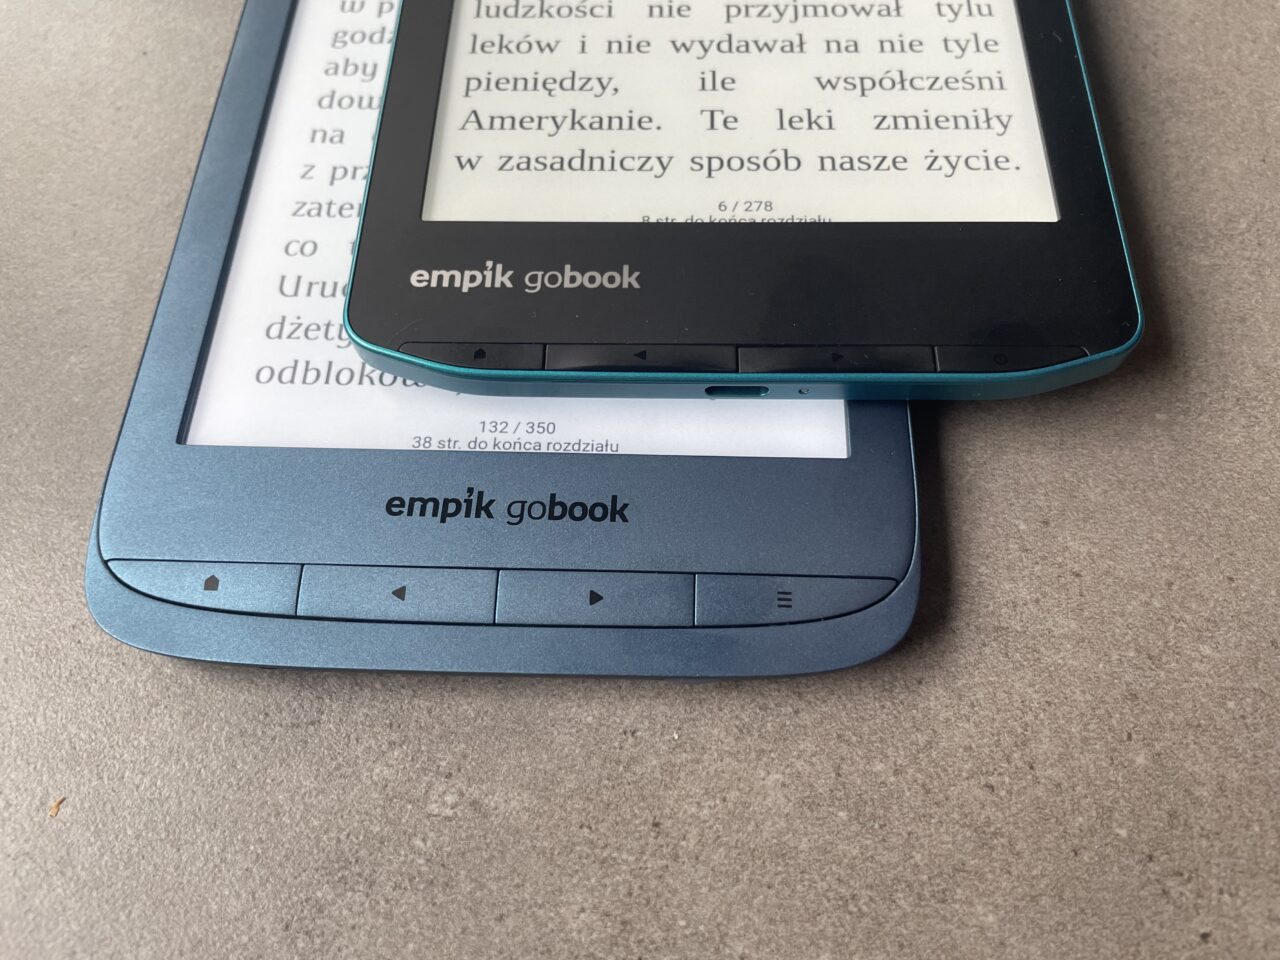 Dwa czytniki e-booków marki Empik Gobook ułożone jeden na drugim na płaskiej powierzchni.